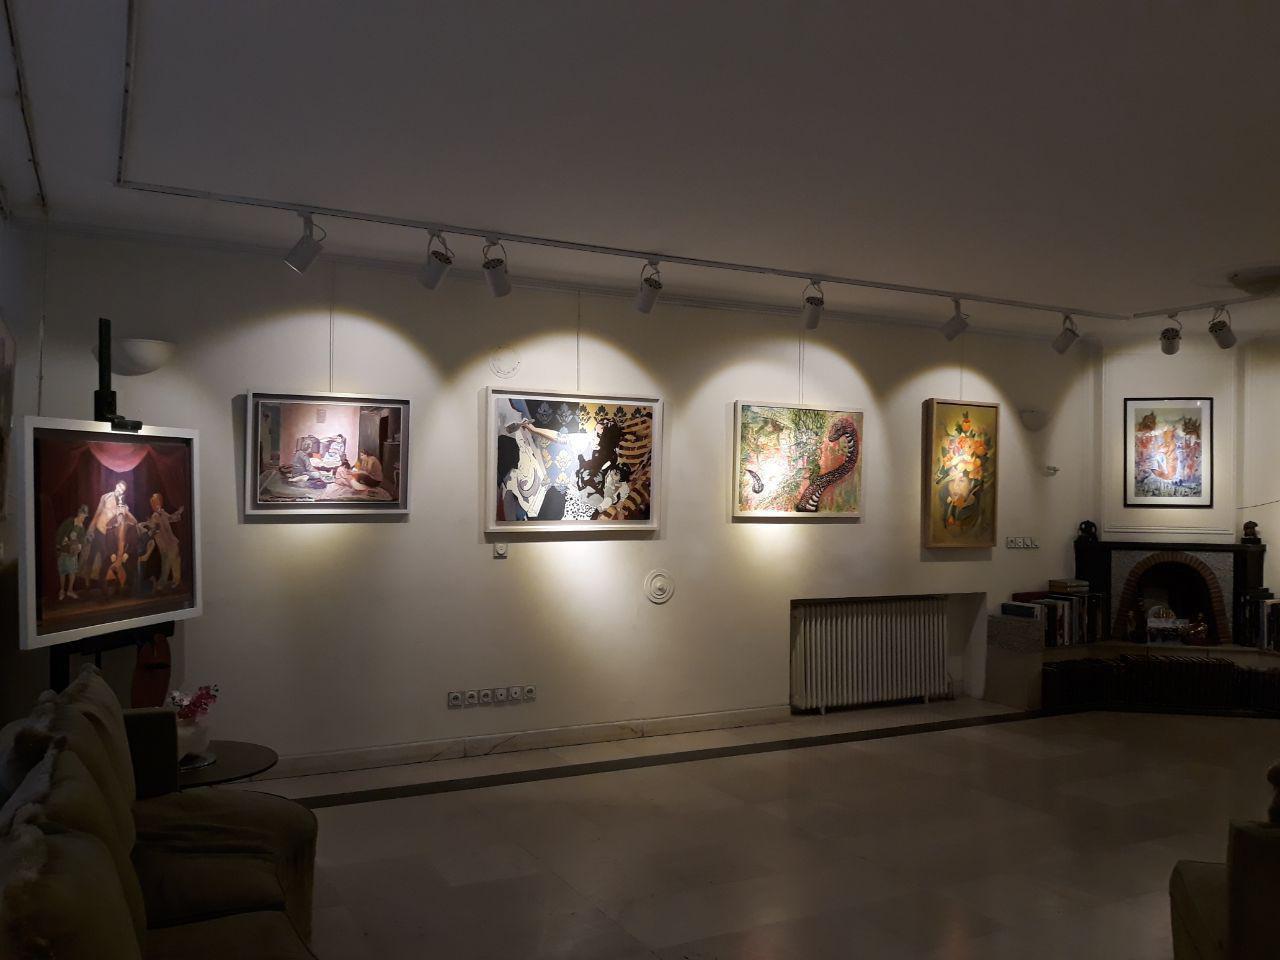 گزارش تصویری نمایشگاه "اثرگذار" در گالری آشیان نقش و مهر